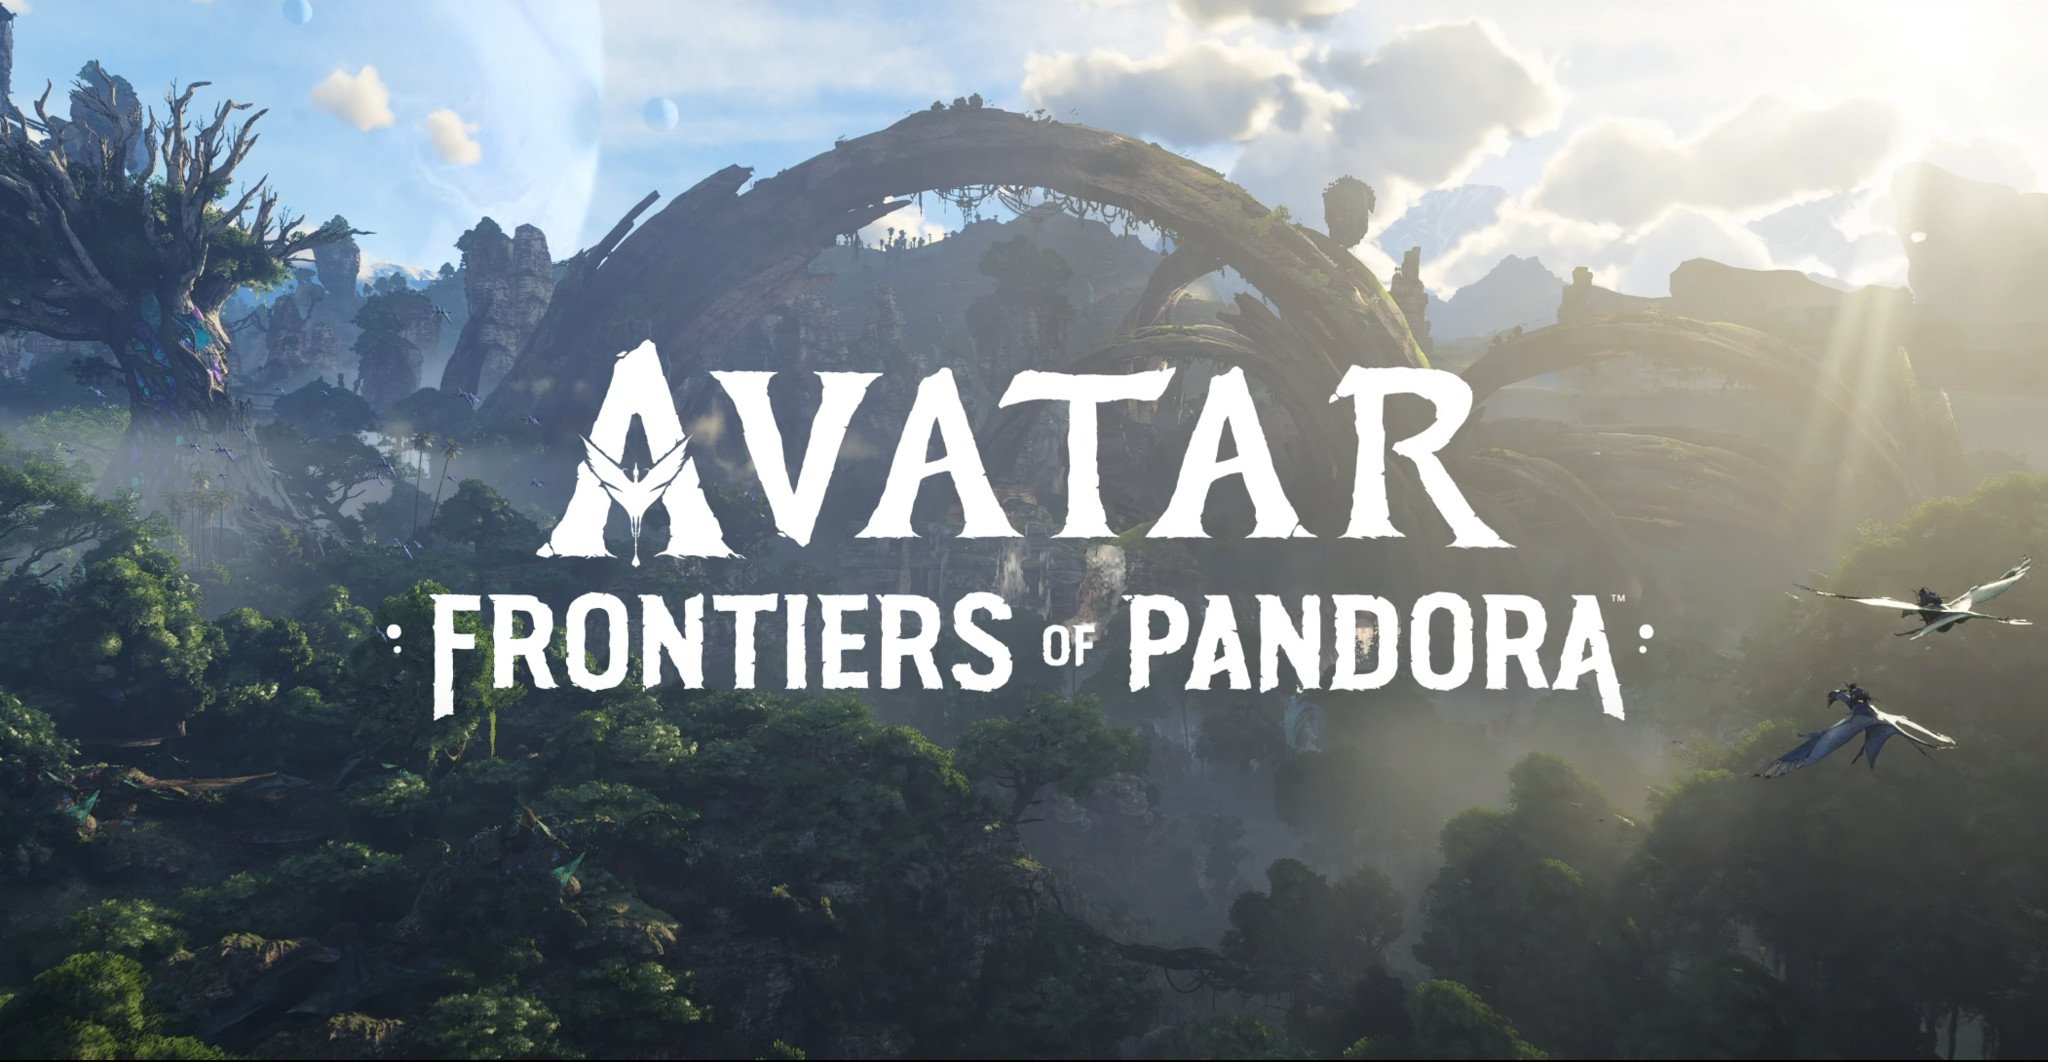 Bom tấn tỷ đô Avatar trở lại màn ảnh sau 13 năm với phiên bản chưa từng có